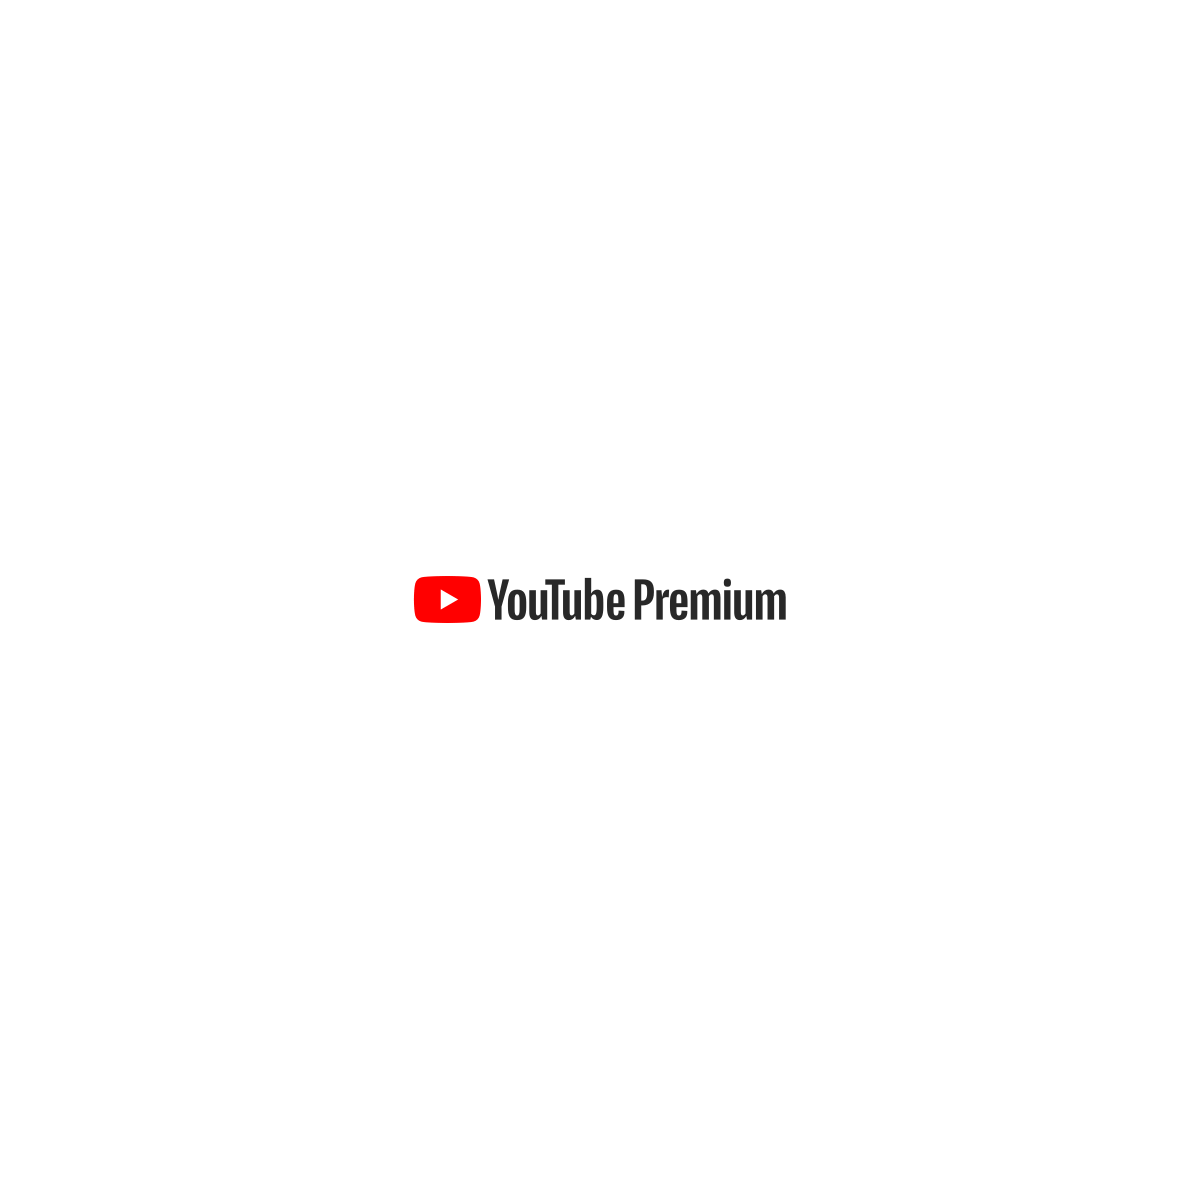 YouTube First Logo - YouTube Premium - YouTube